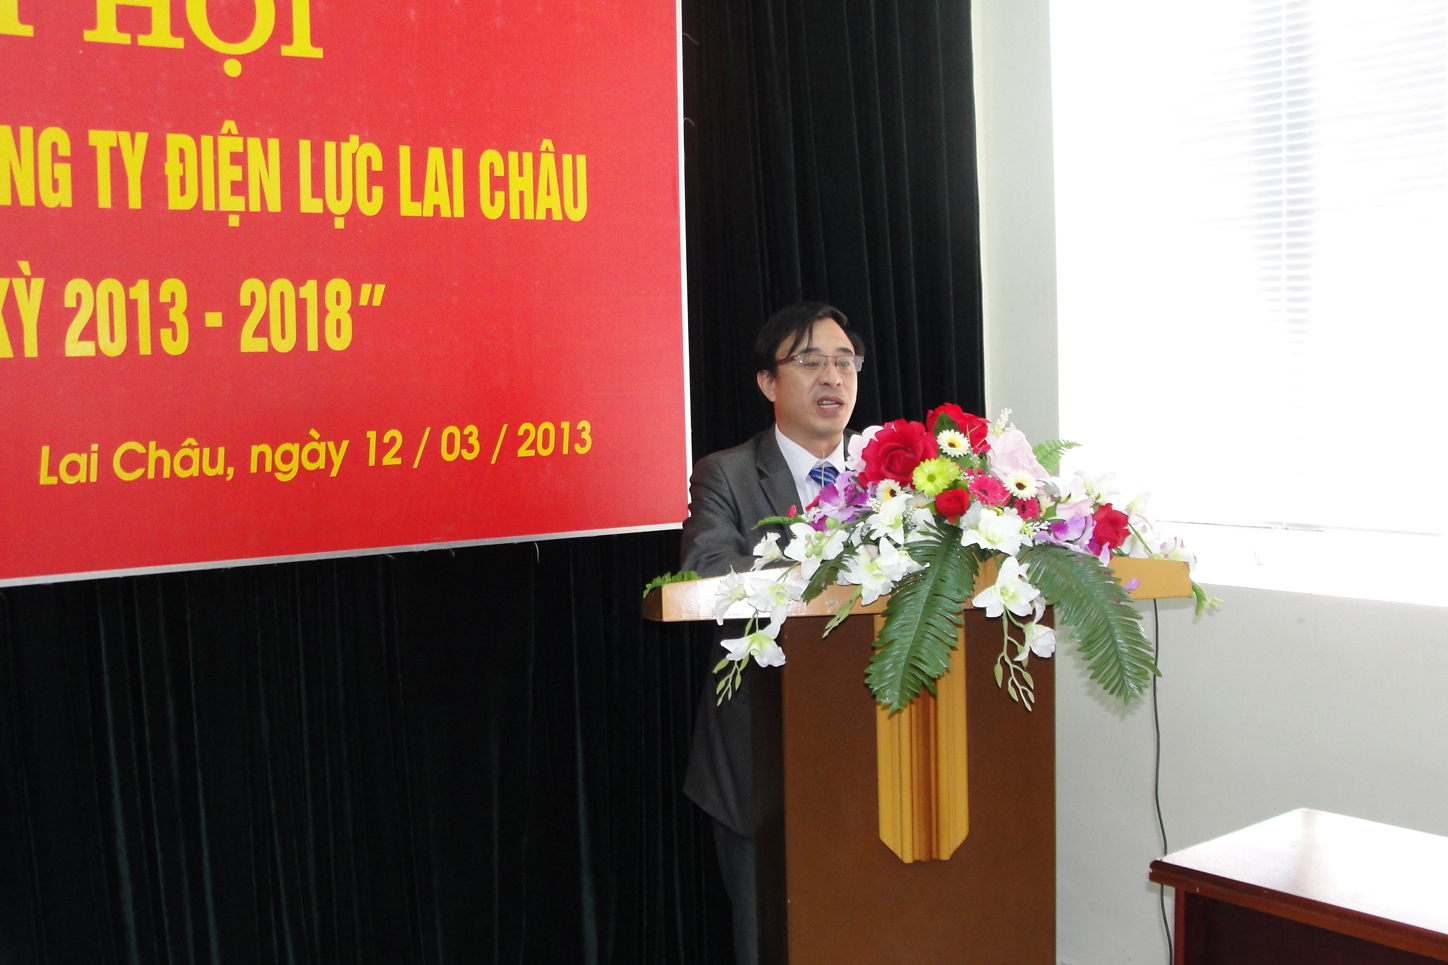 Đại hội Chi hội Luật gia Công ty Điện lực Lai Châu lần thứ nhất